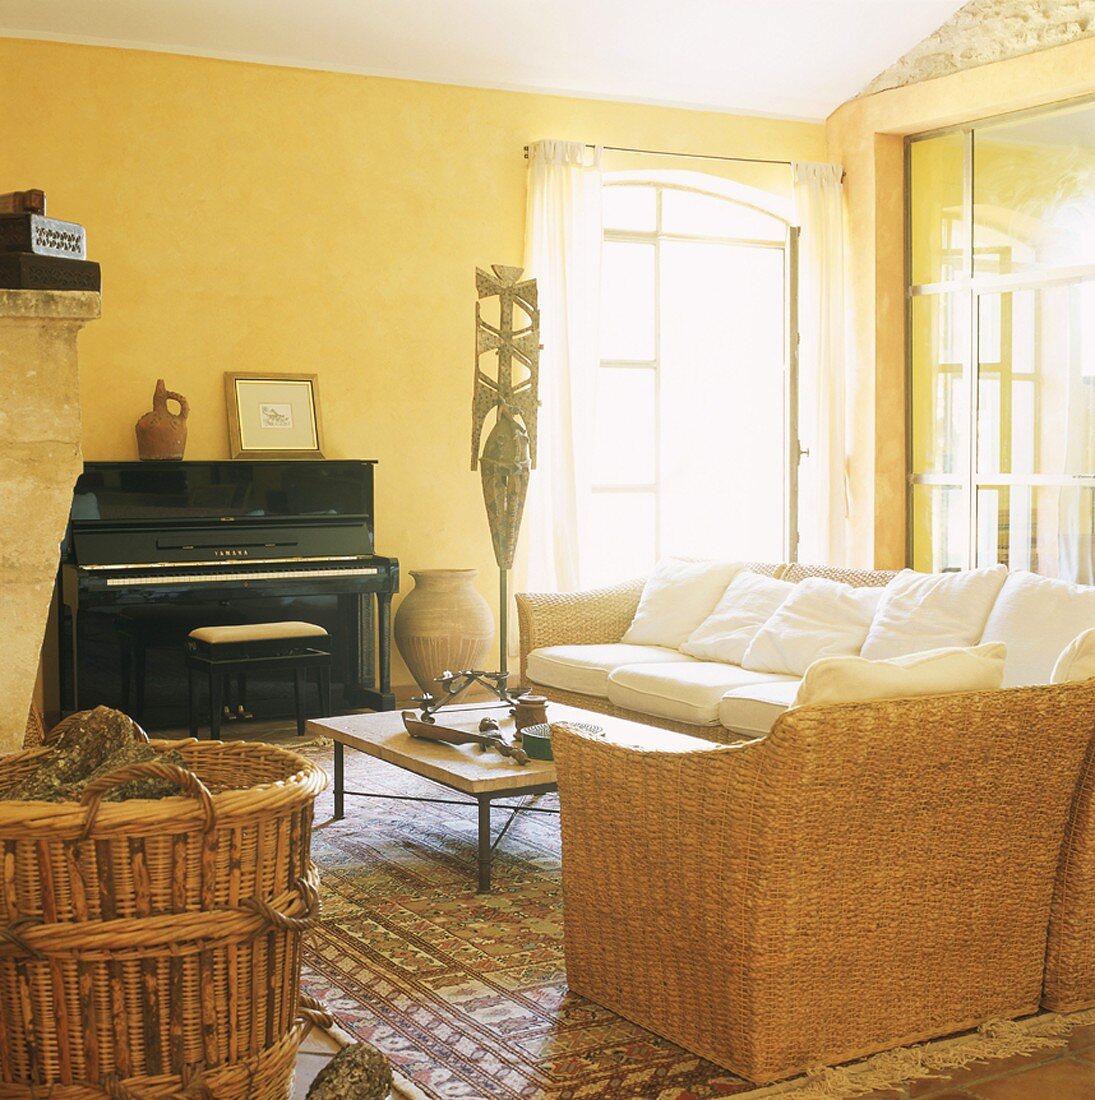 Schwarzes Klavier und Rattansitzmöbel in einem einladenden sonnengelben Raum mit schräger Decke